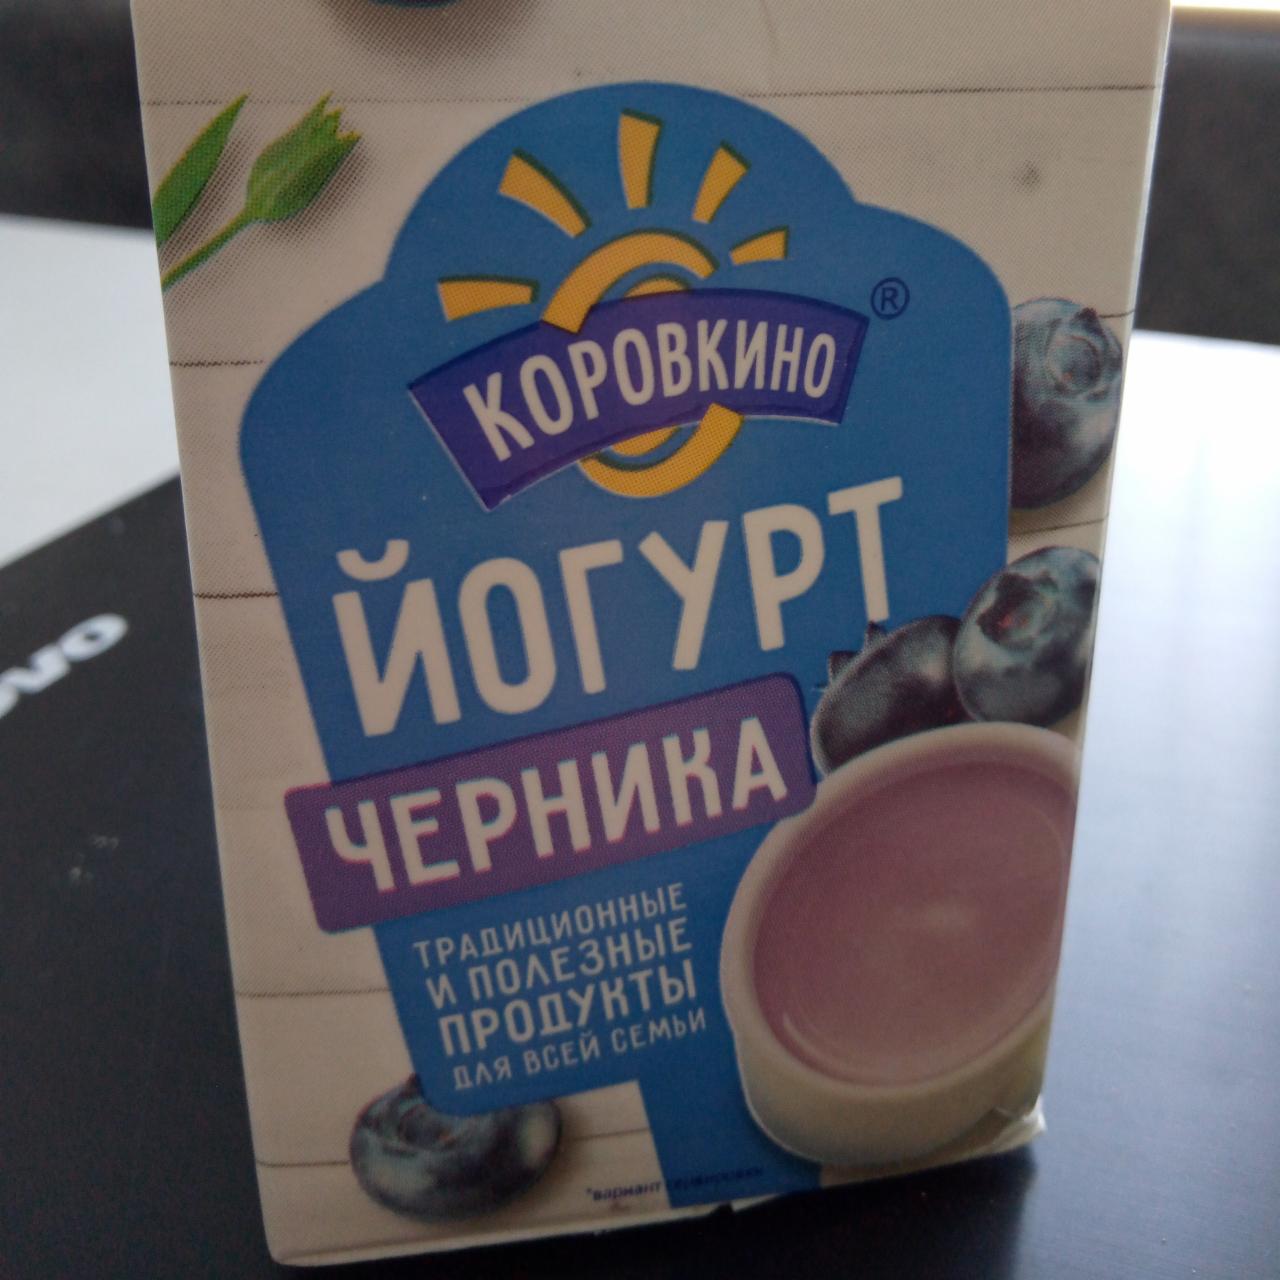 Фото - Йогурт со вкусом черники Коровкино